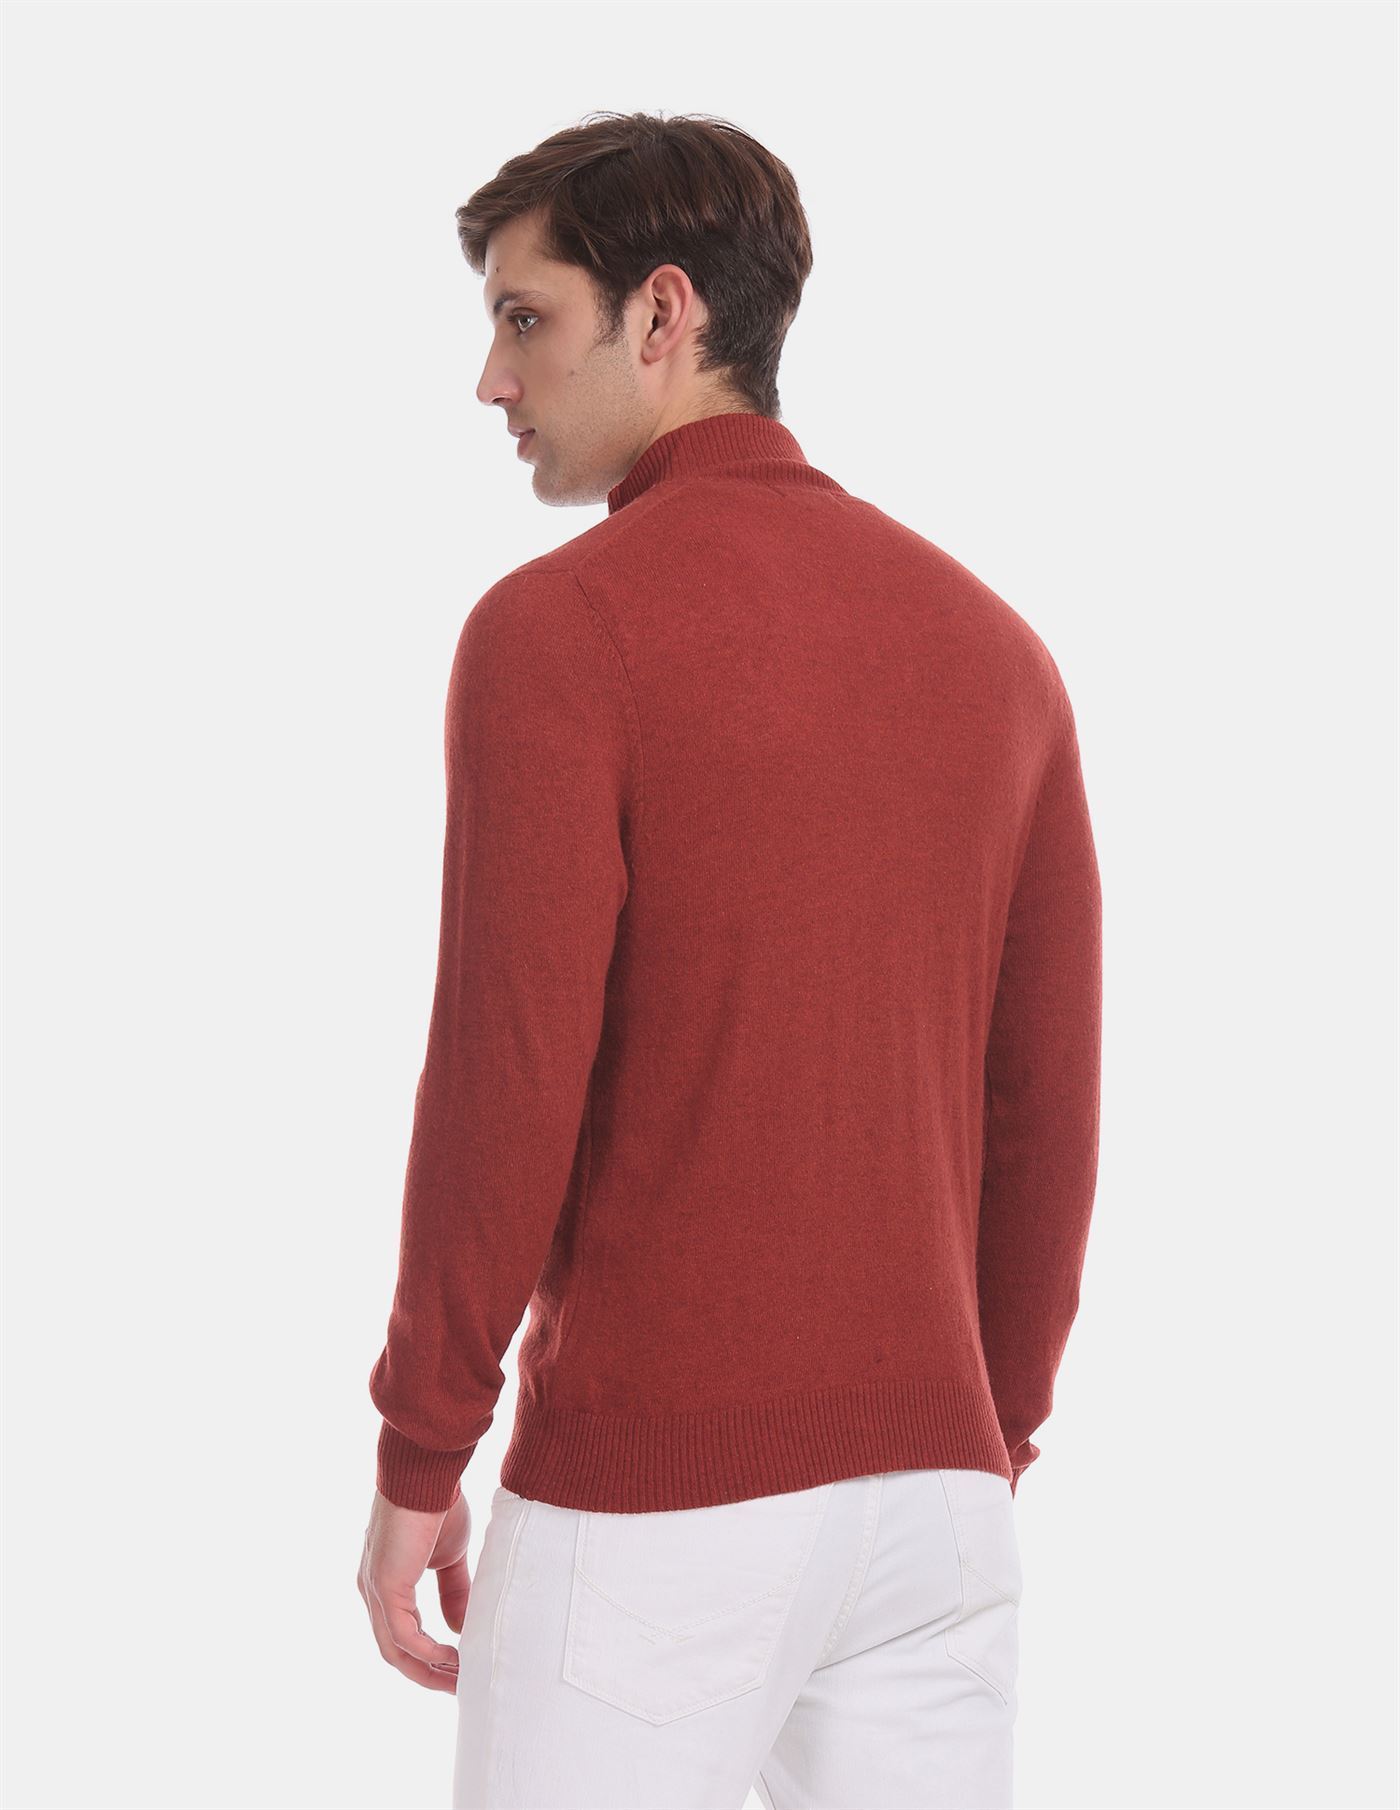 U.S.Polo Assn. Men Casual Wear Maroon Sweater